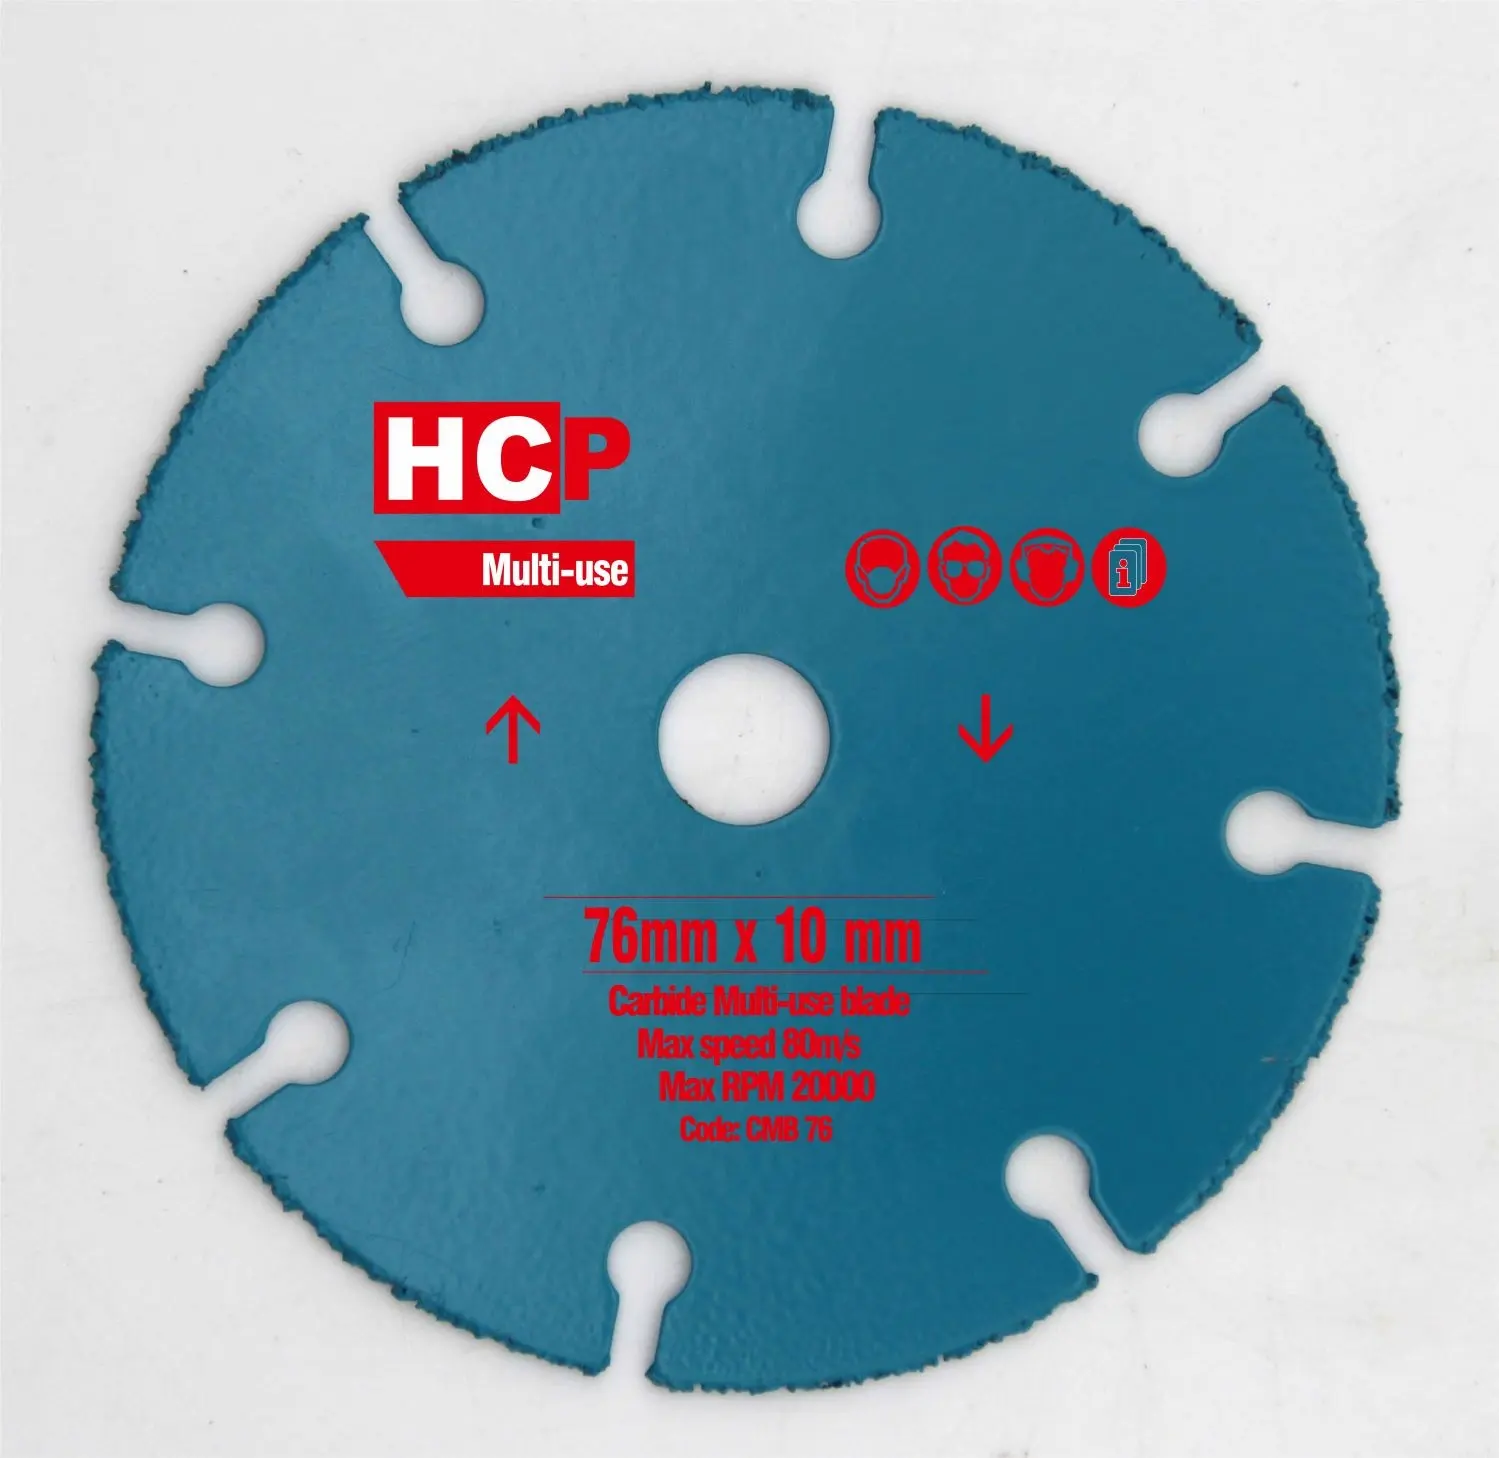 HCP karbür kesme tekerleği 3 "76mm Tungsten karbür aşındırıcı çok amaçlı testere kesme bıçağı PVC/alçı/cam elyaf/kauçuk